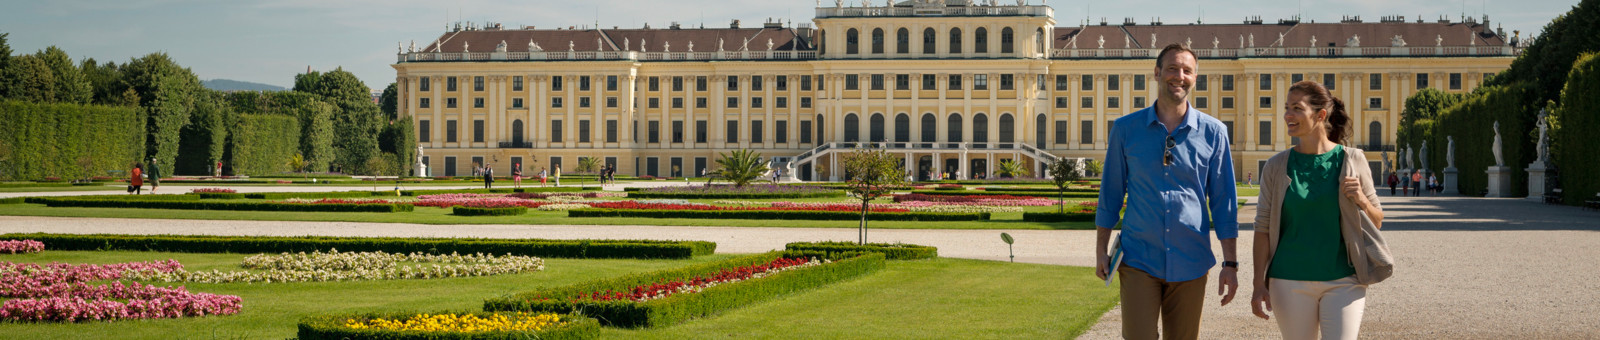     Schönbrunn Palace 